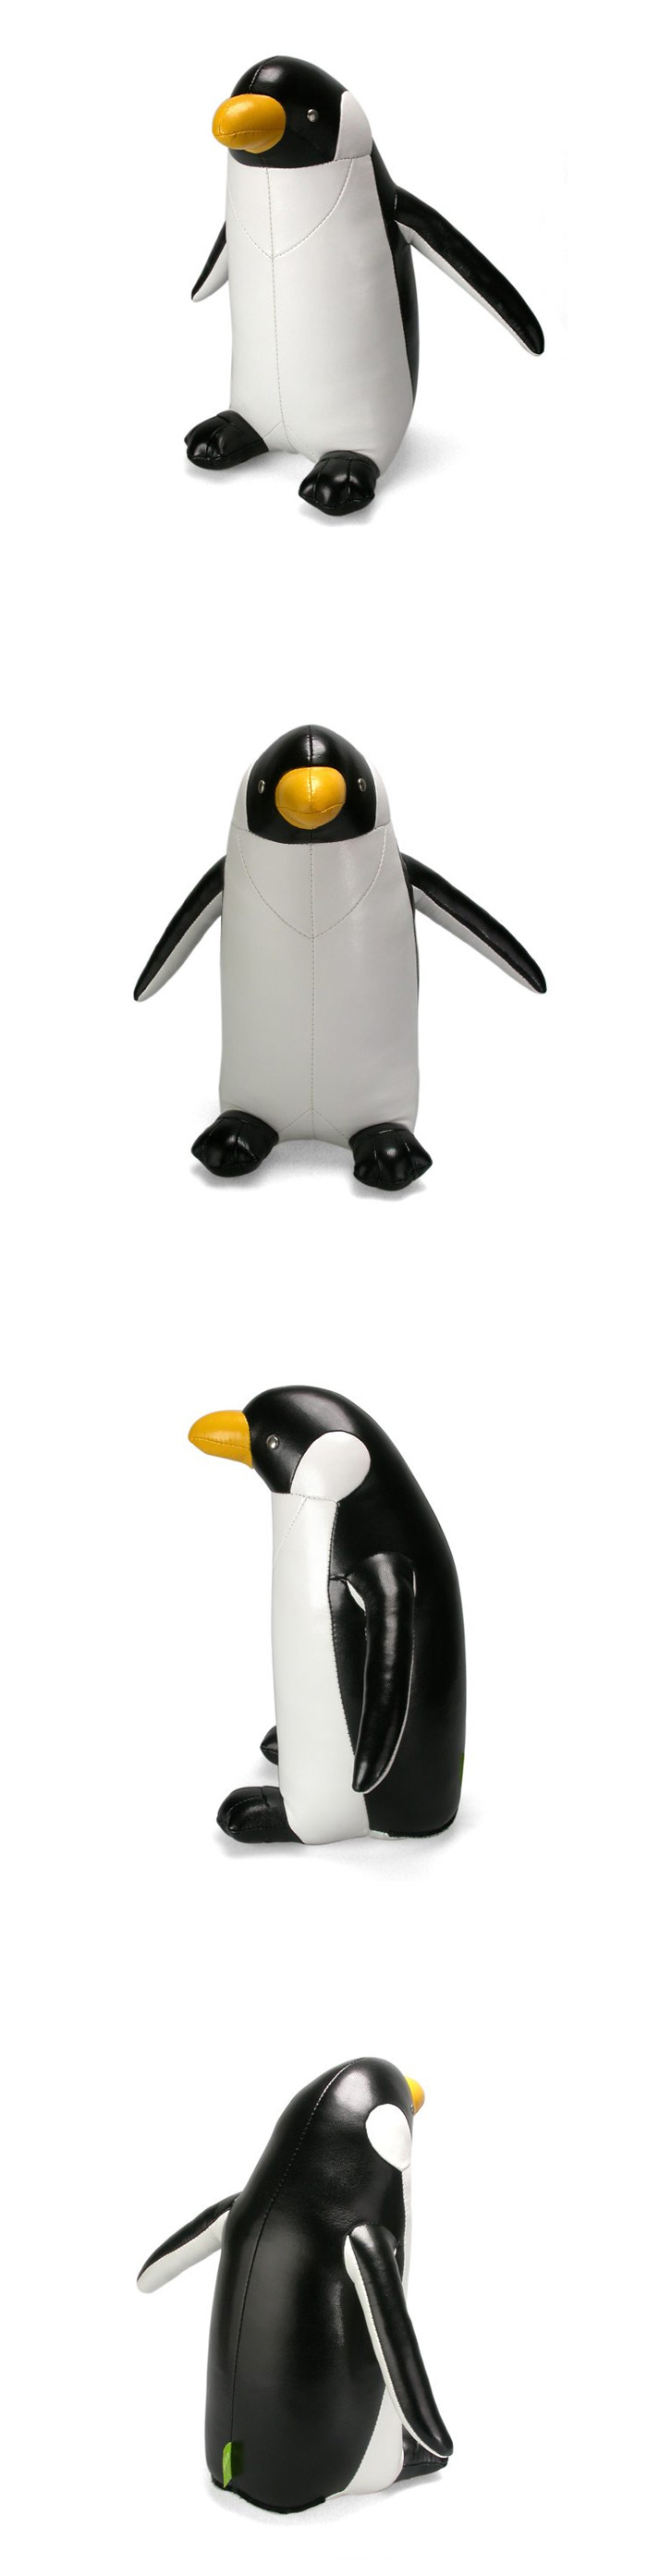 Zuny Classic 企鵝造型擺飾書檔 (黑白色)